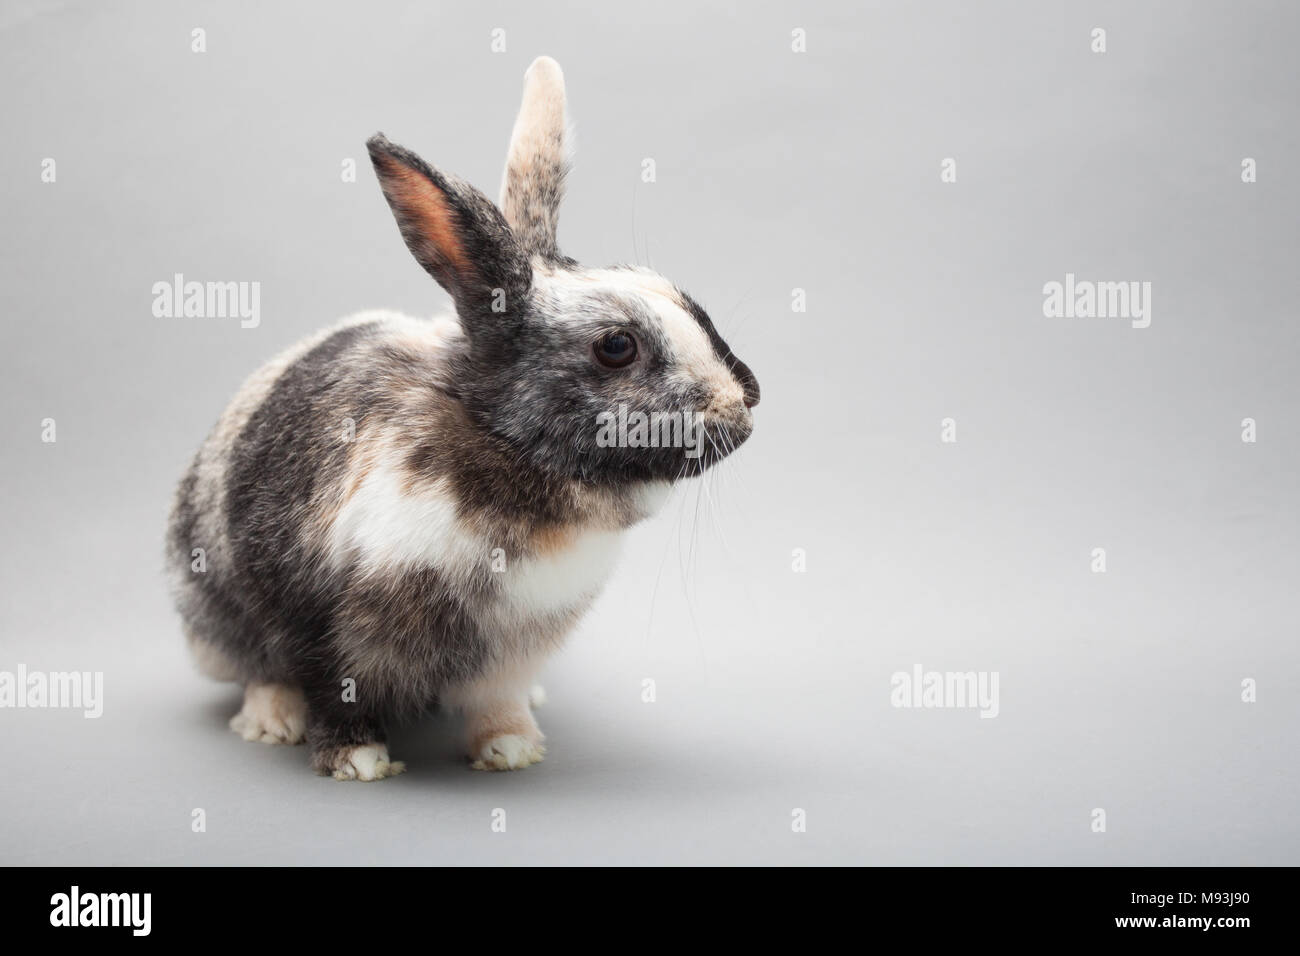 Pasqua adorabili poco bunny rabbit cercando suspisiously nella fotocamera Foto Stock